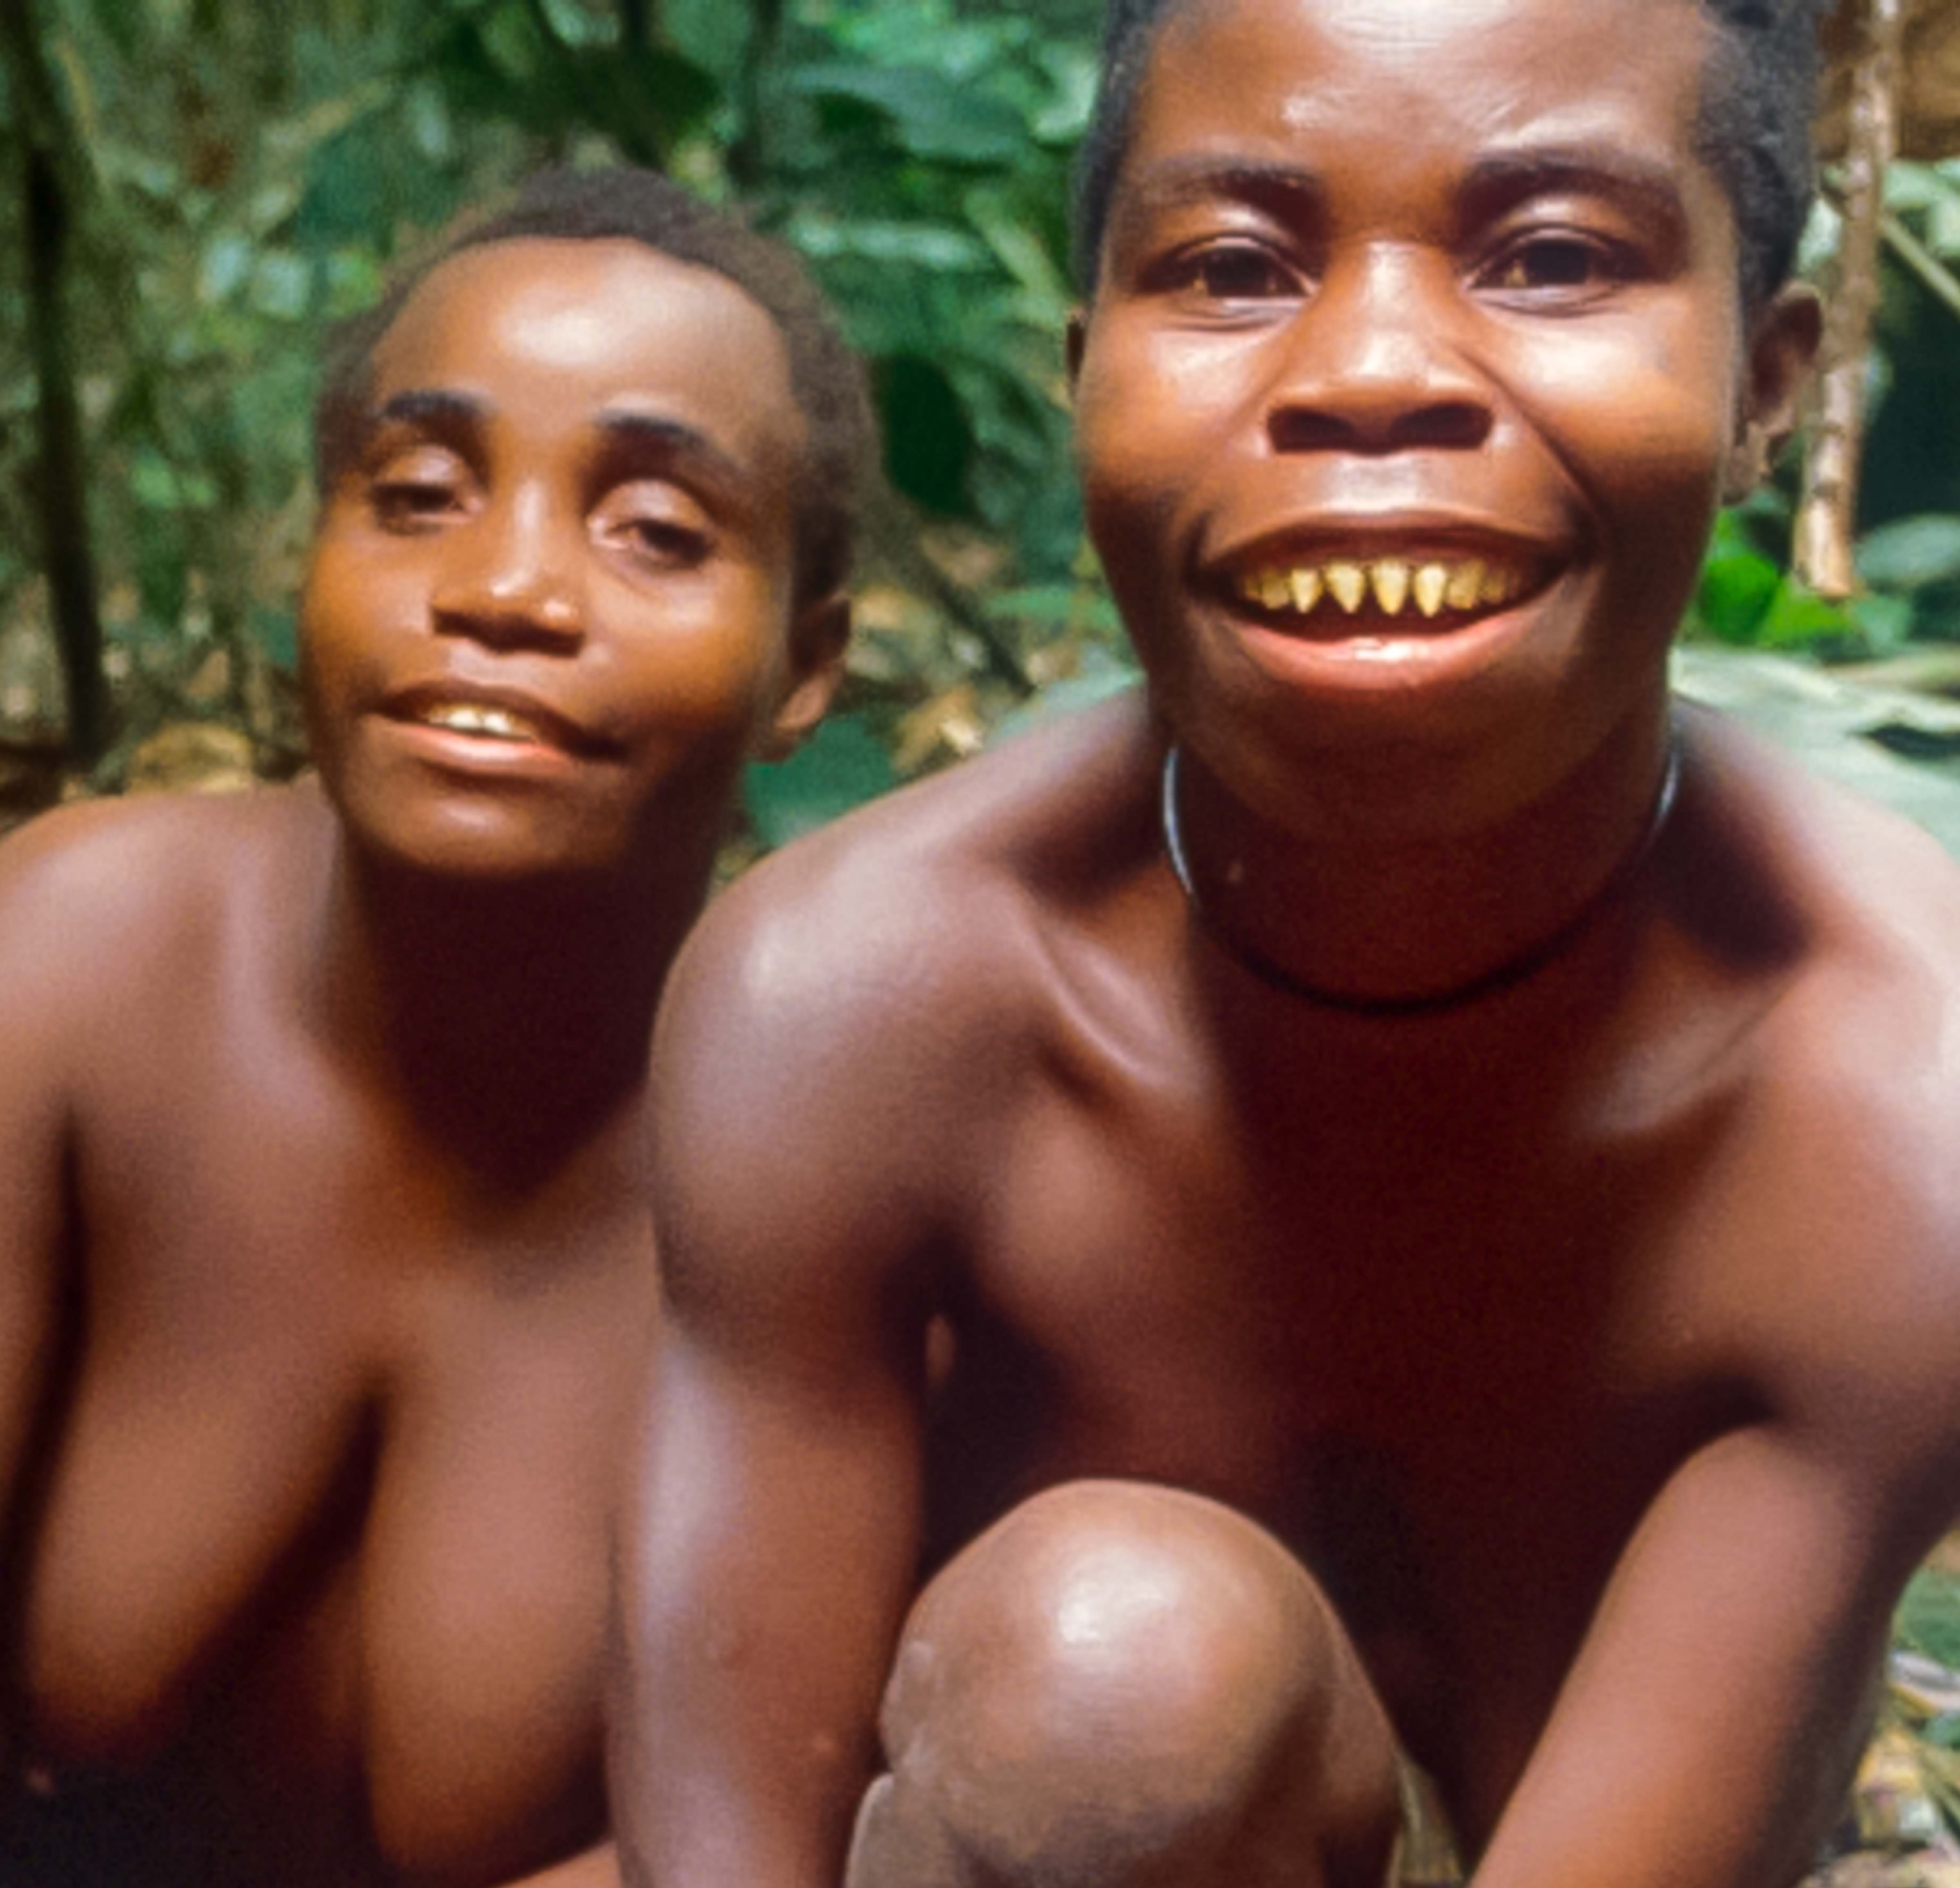 члены мужчин африканских племен фото 106